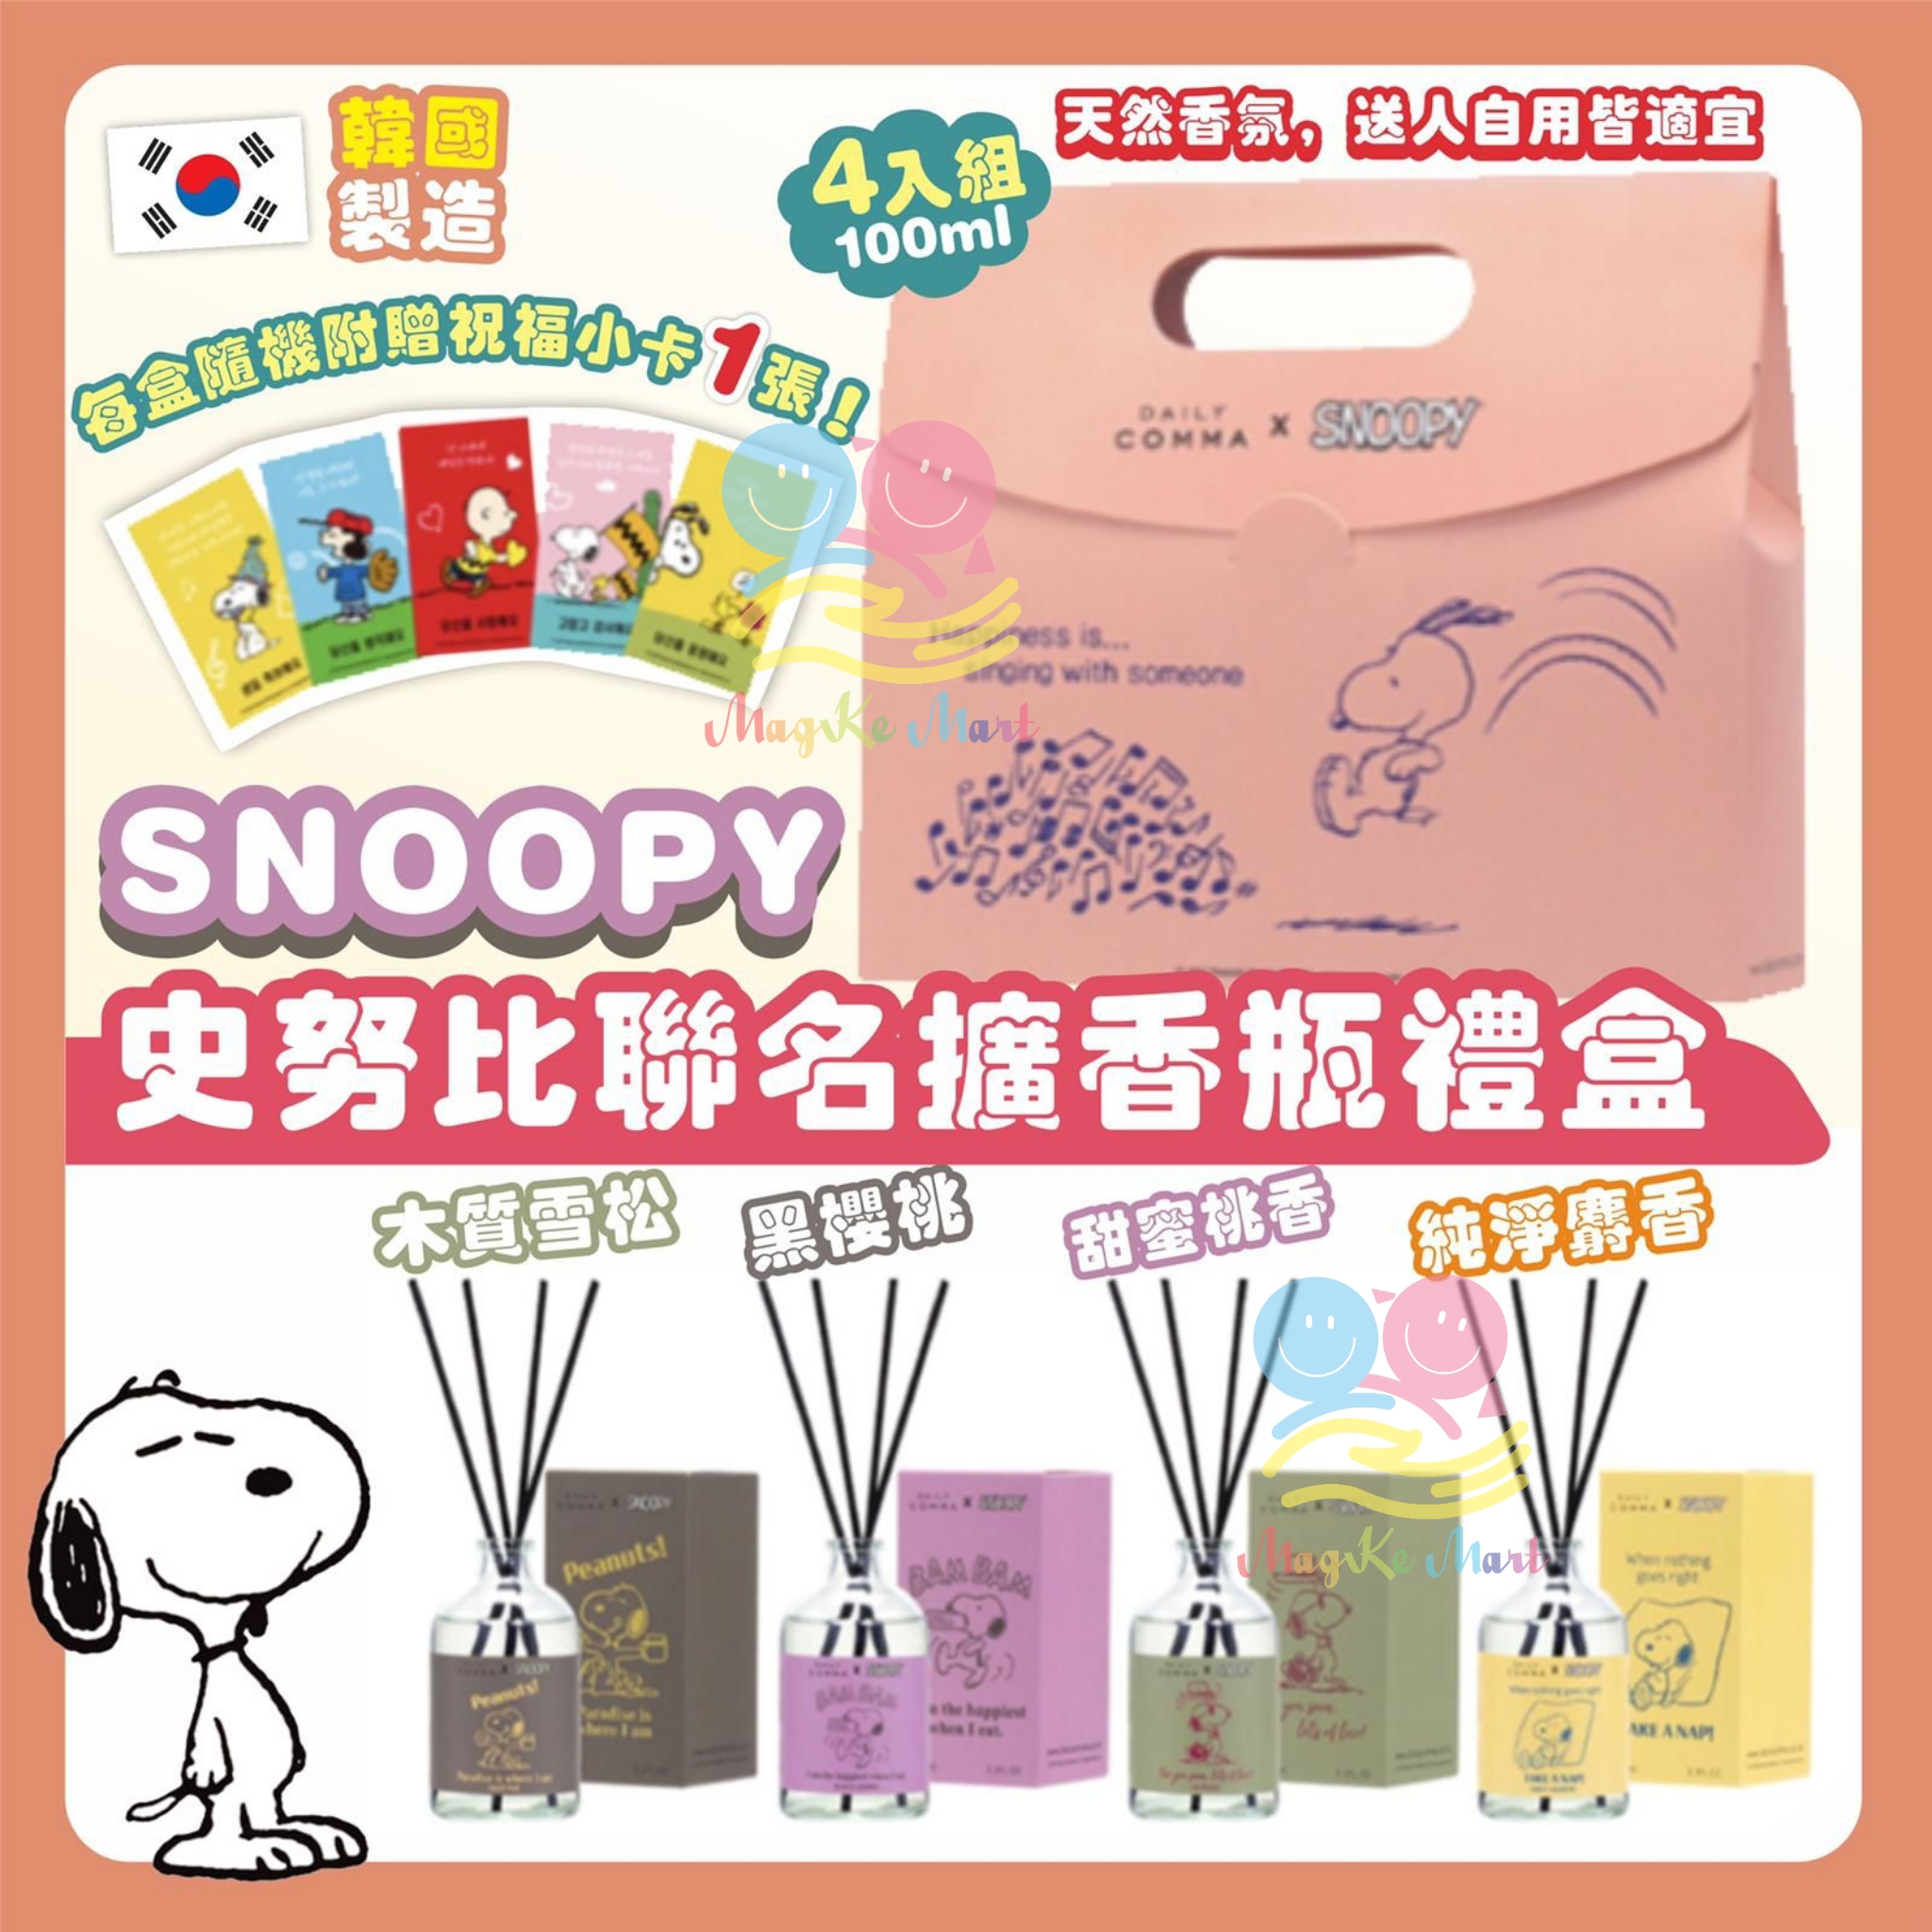 韓國 Daily comma x SNOOPY 擴香瓶禮盒(1套4支)(2022年1月批)